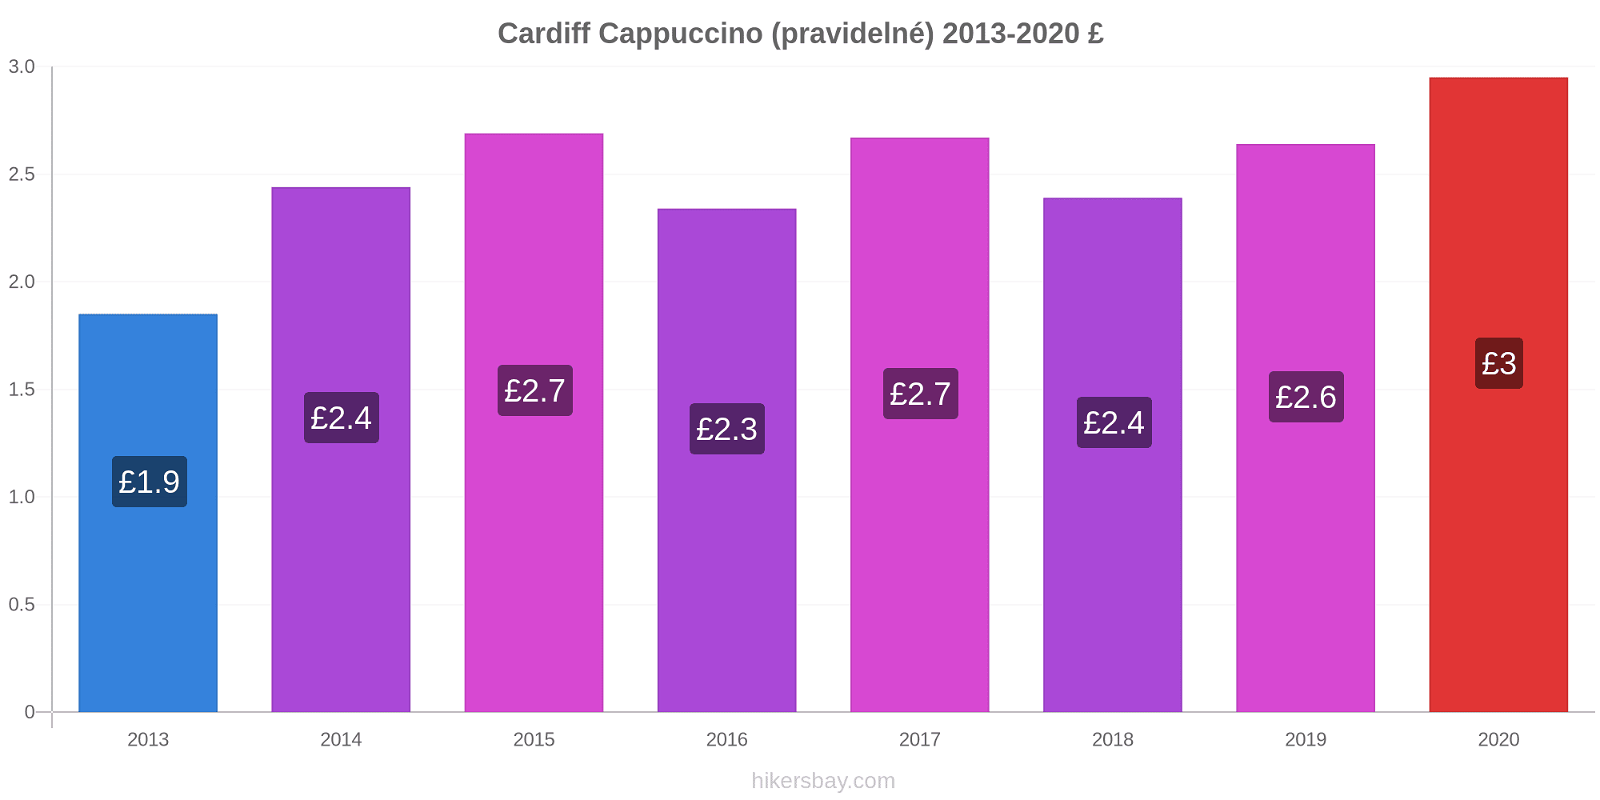 Cardiff změny cen Cappuccino (pravidelné) hikersbay.com